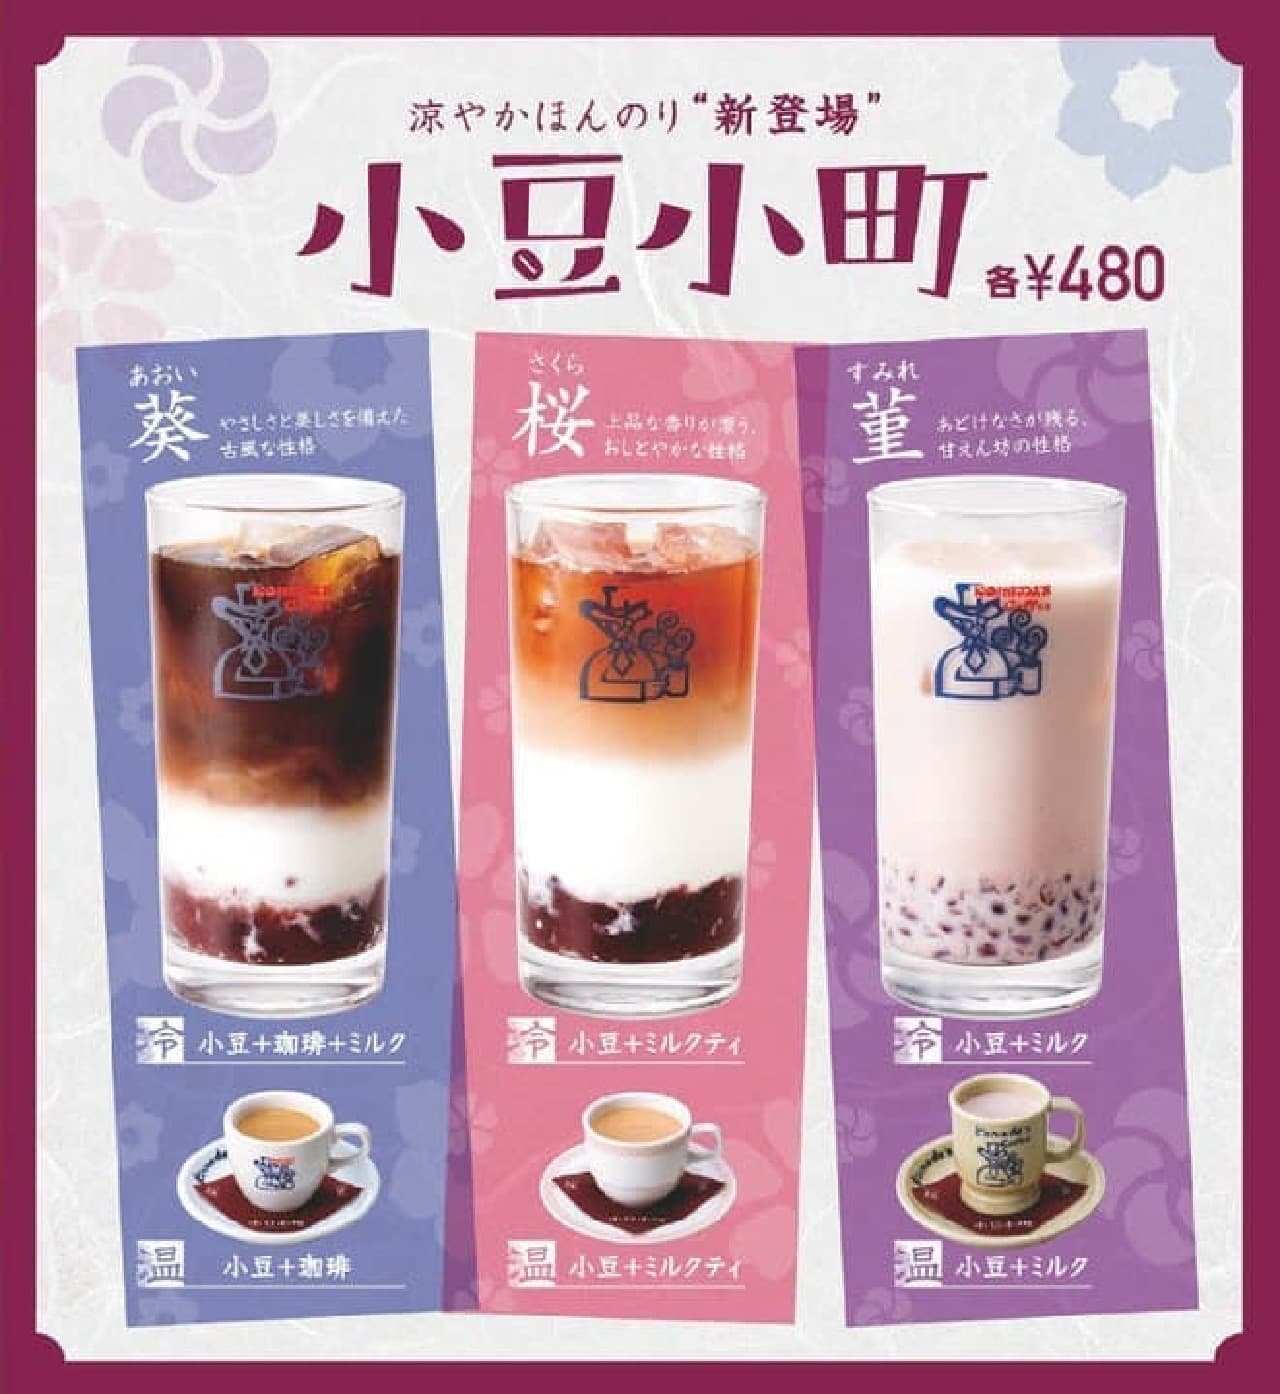 Komeda Coffee Shop "Azuki Komachi Ice"